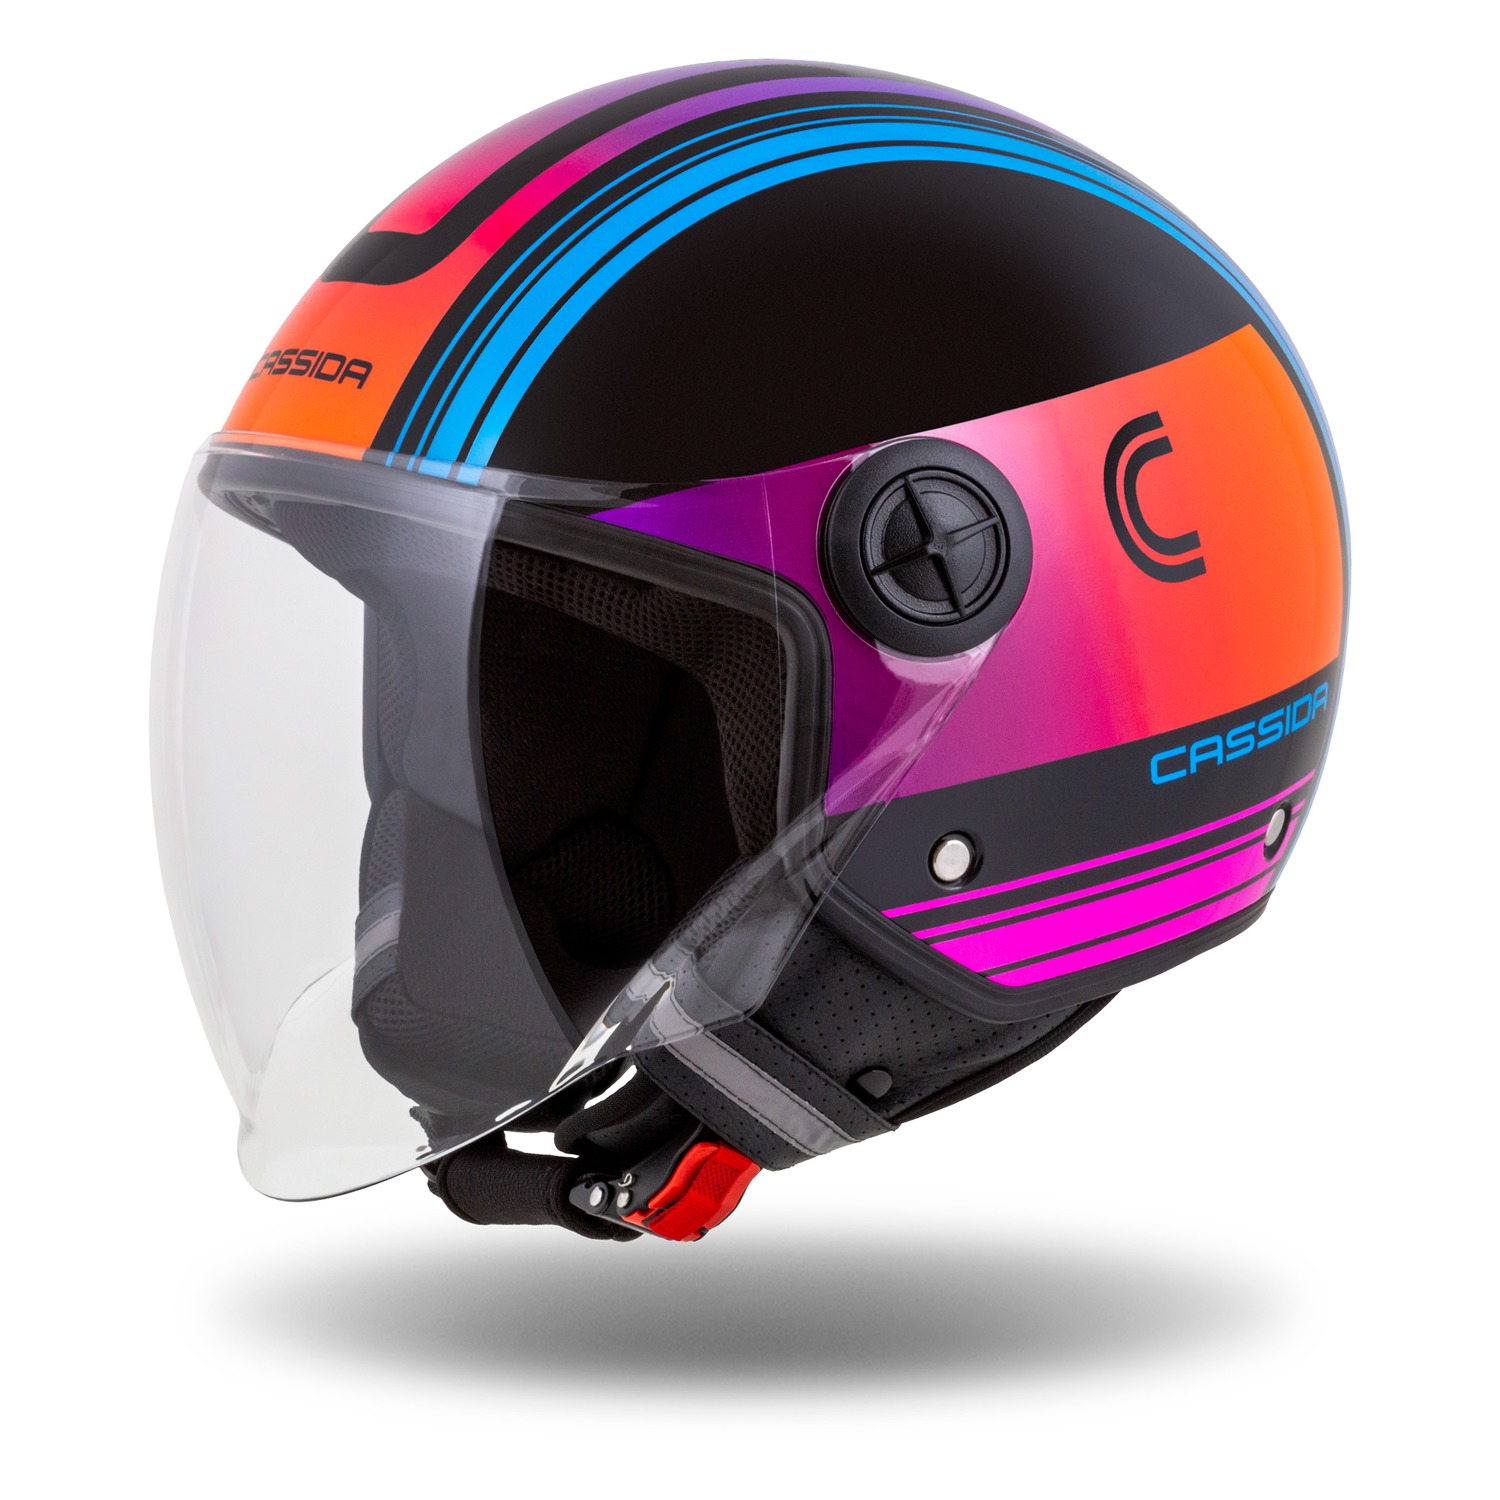 helmet Handy Metropolis, CASSIDA (black/turquoise /gradient) 2023